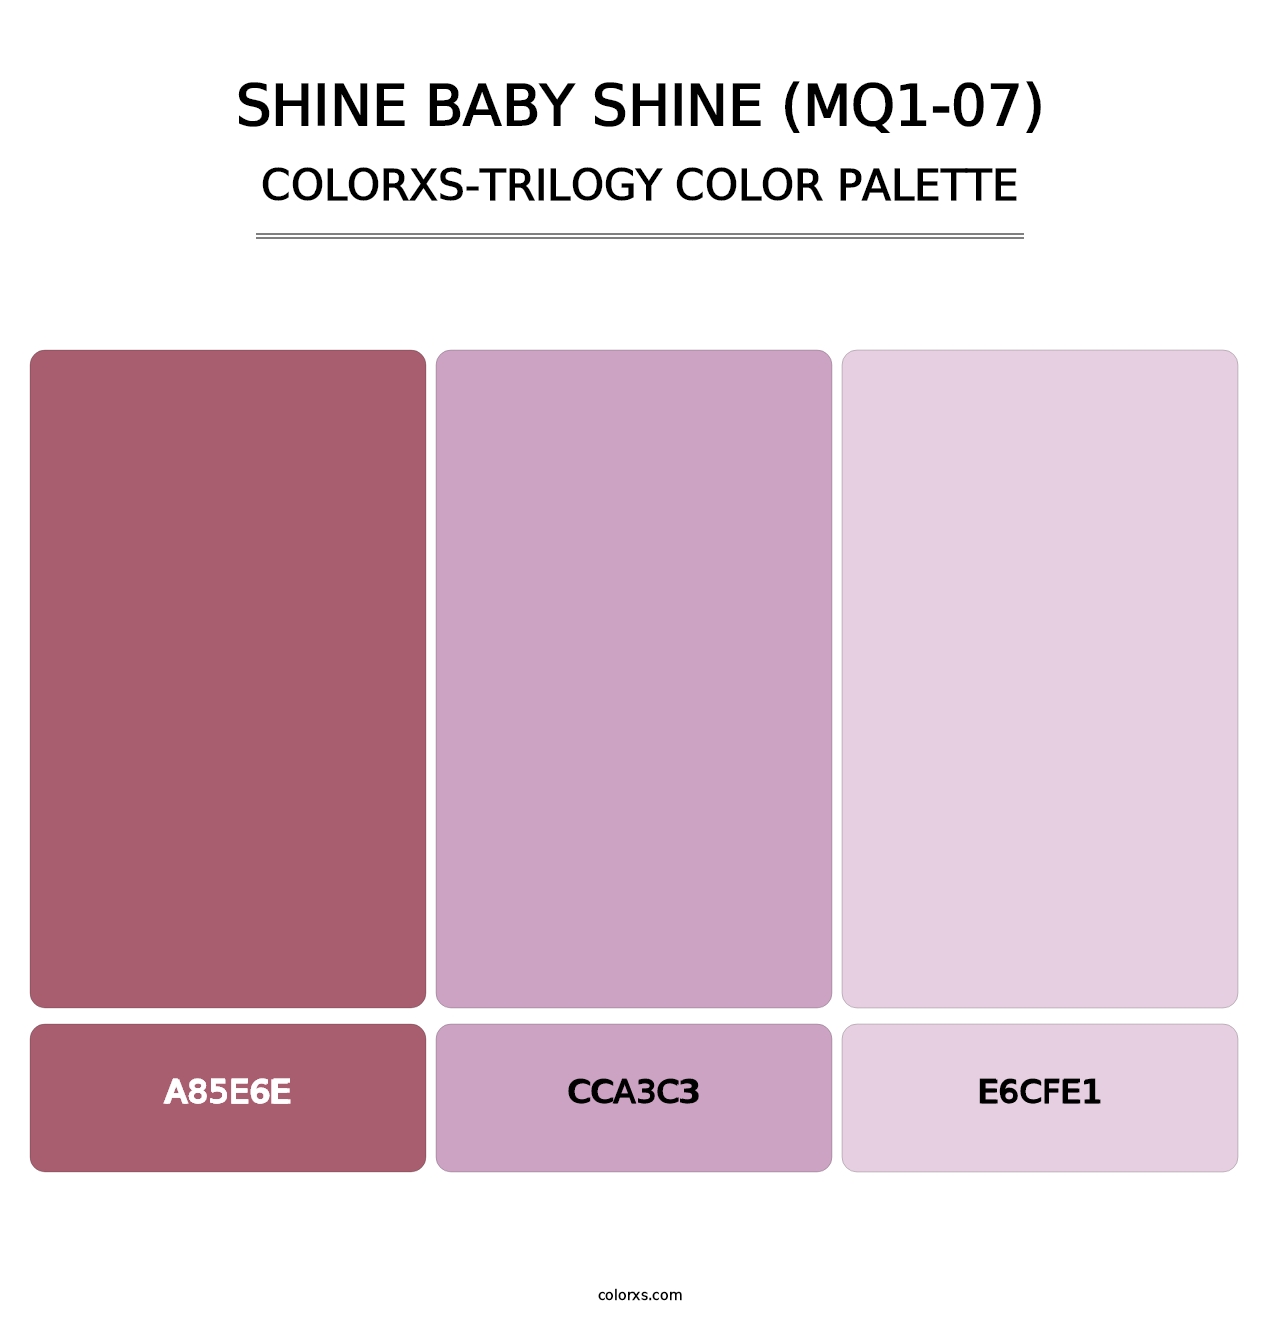 Shine Baby Shine (MQ1-07) - Colorxs Trilogy Palette